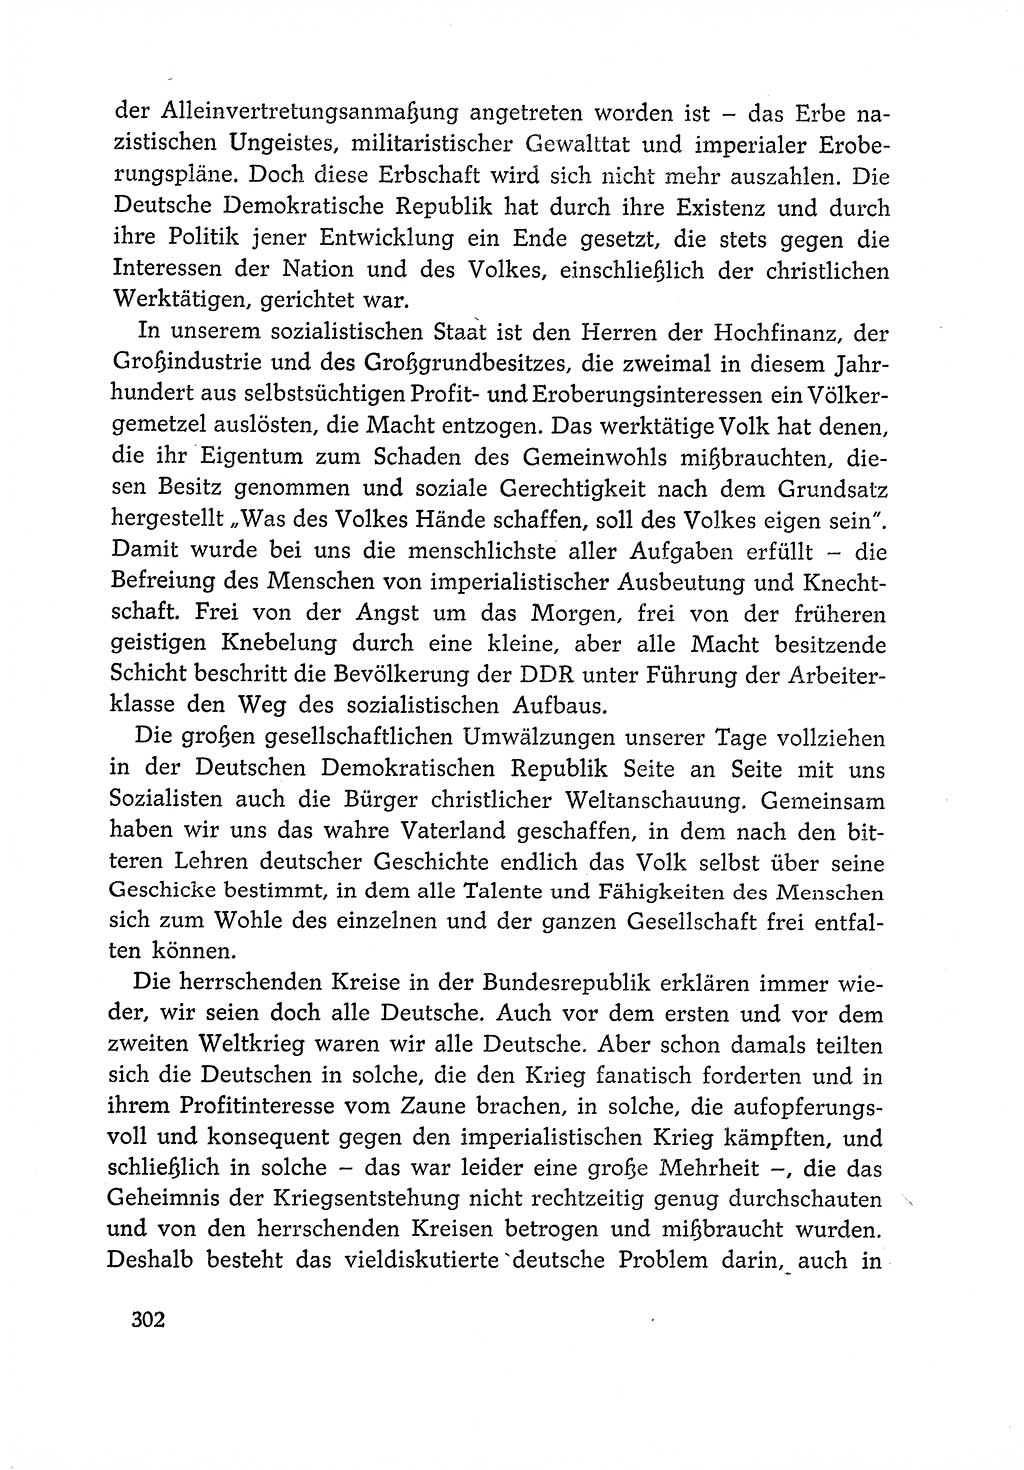 Dokumente der Sozialistischen Einheitspartei Deutschlands (SED) [Deutsche Demokratische Republik (DDR)] 1966-1967, Seite 302 (Dok. SED DDR 1966-1967, S. 302)